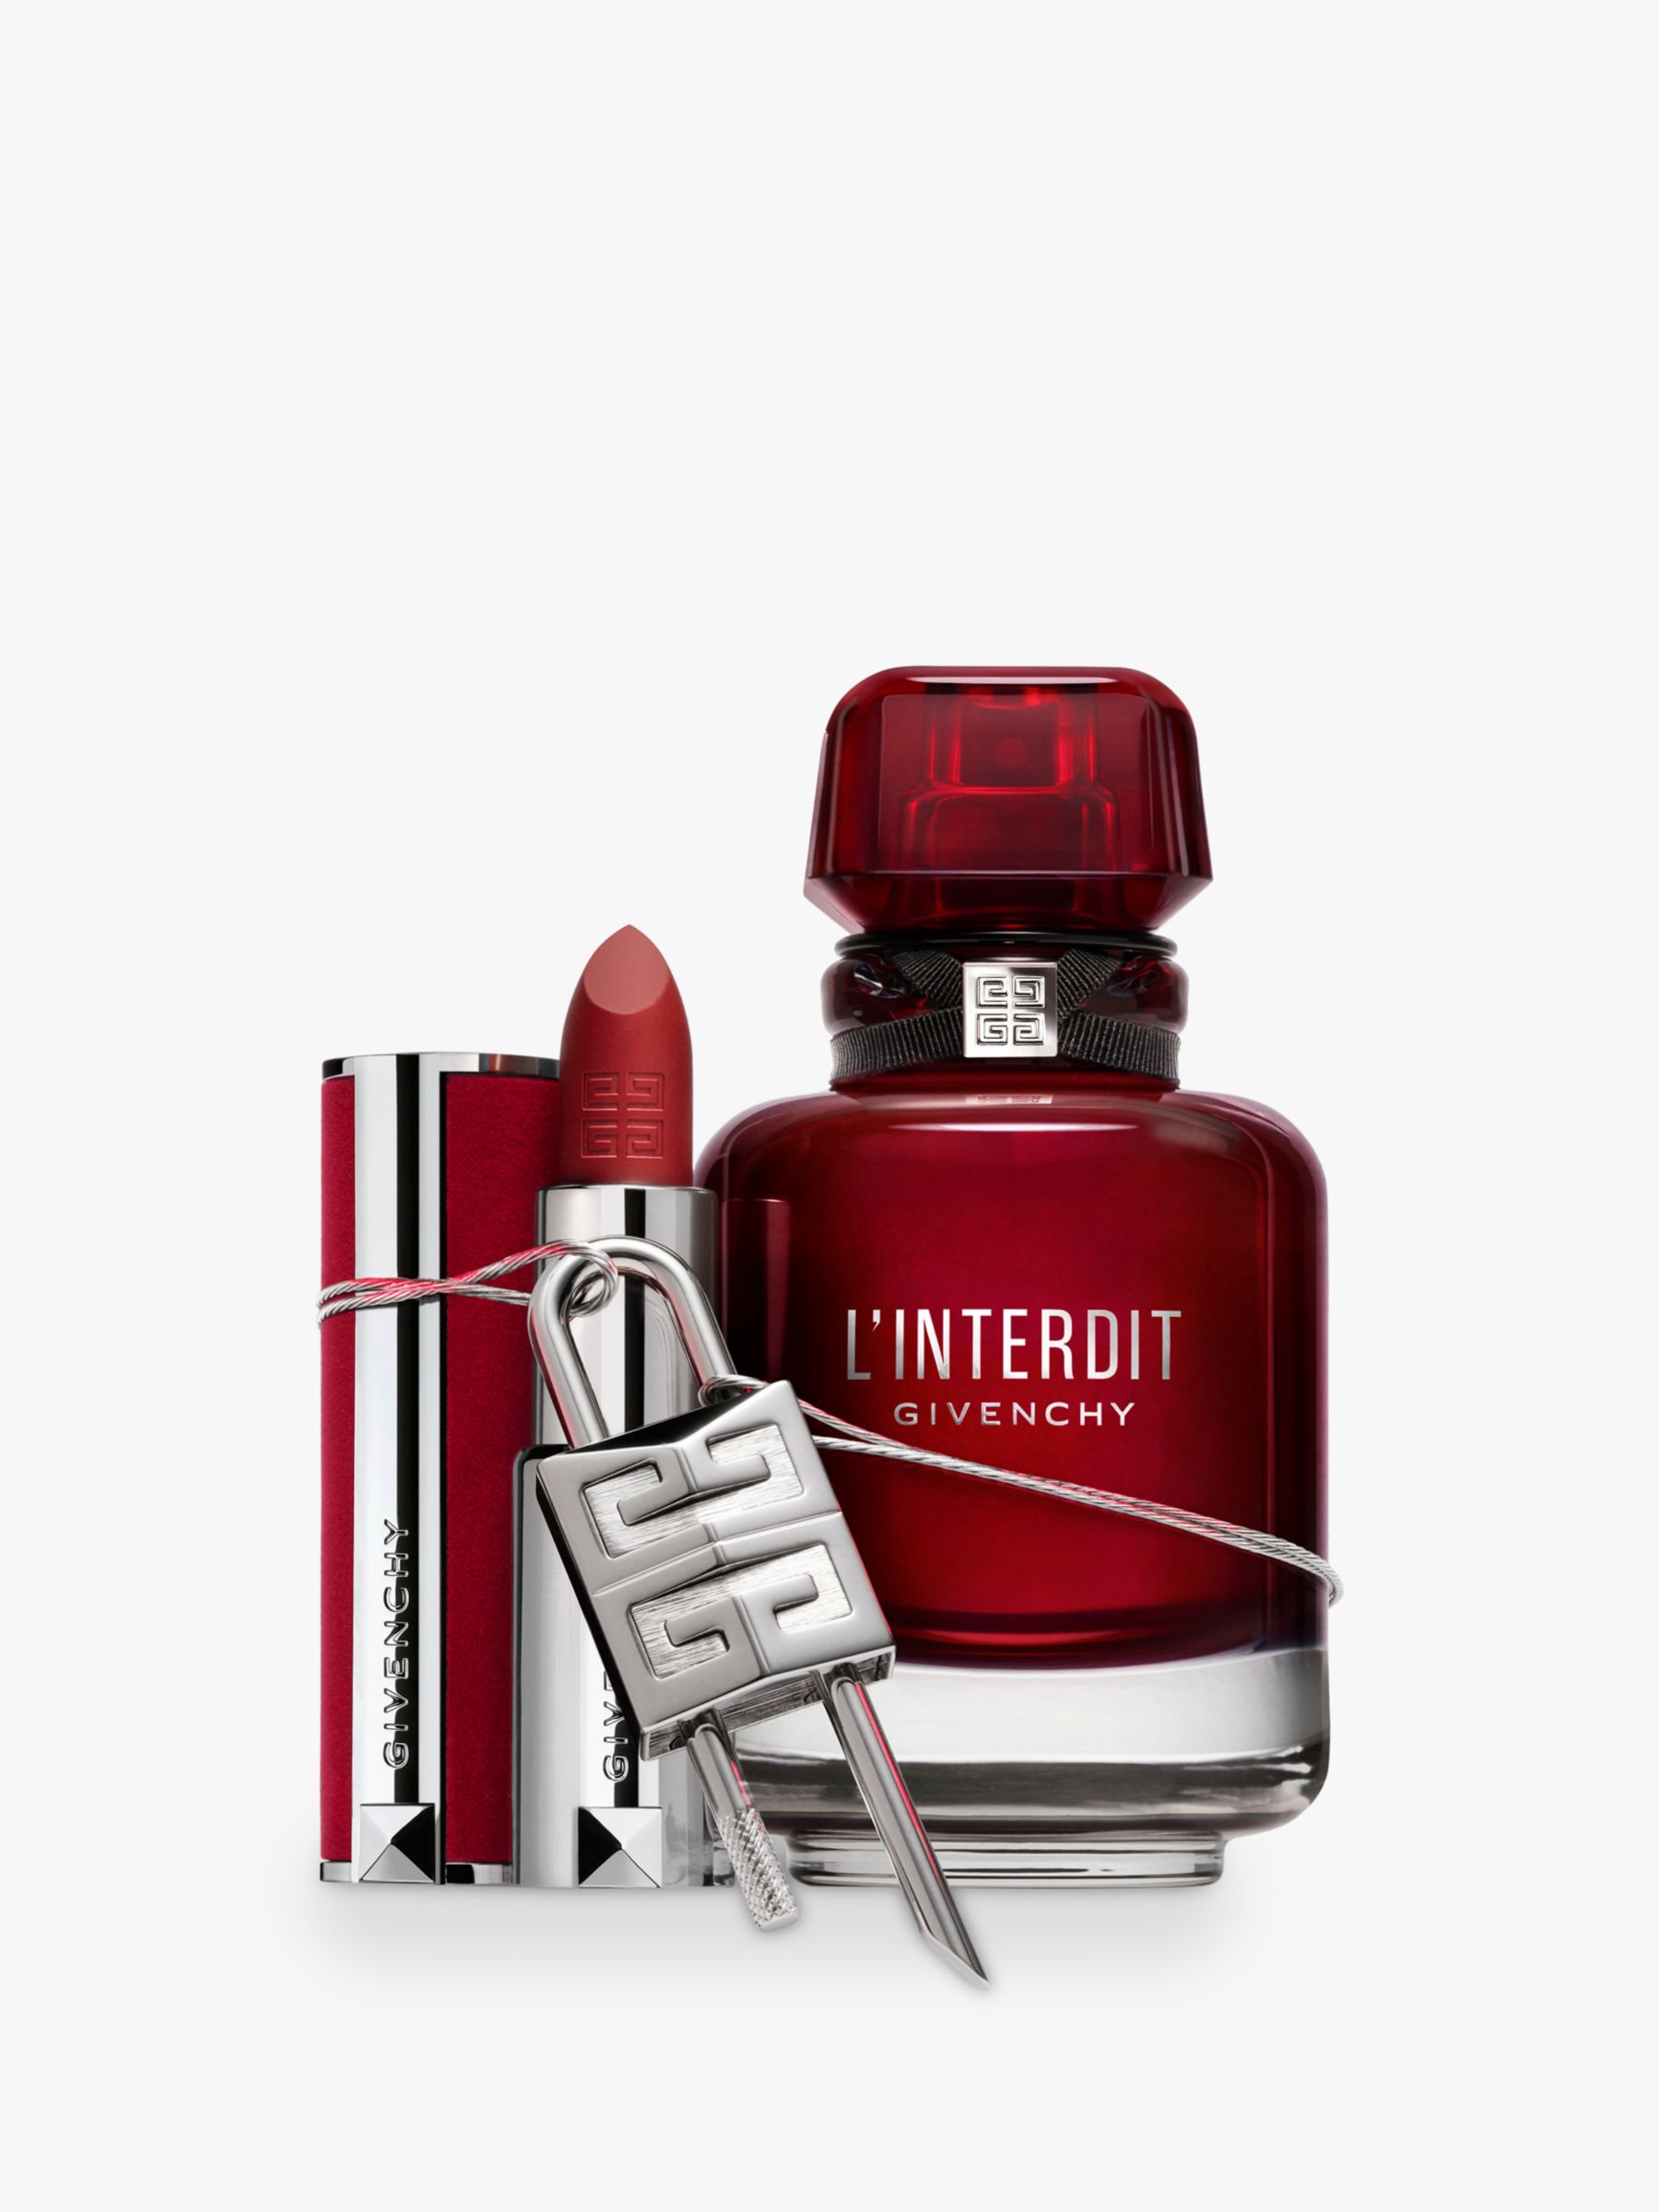 Givenchy L'Interdit Eau de Parfum Rouge, 35ml at John Lewis & Partners